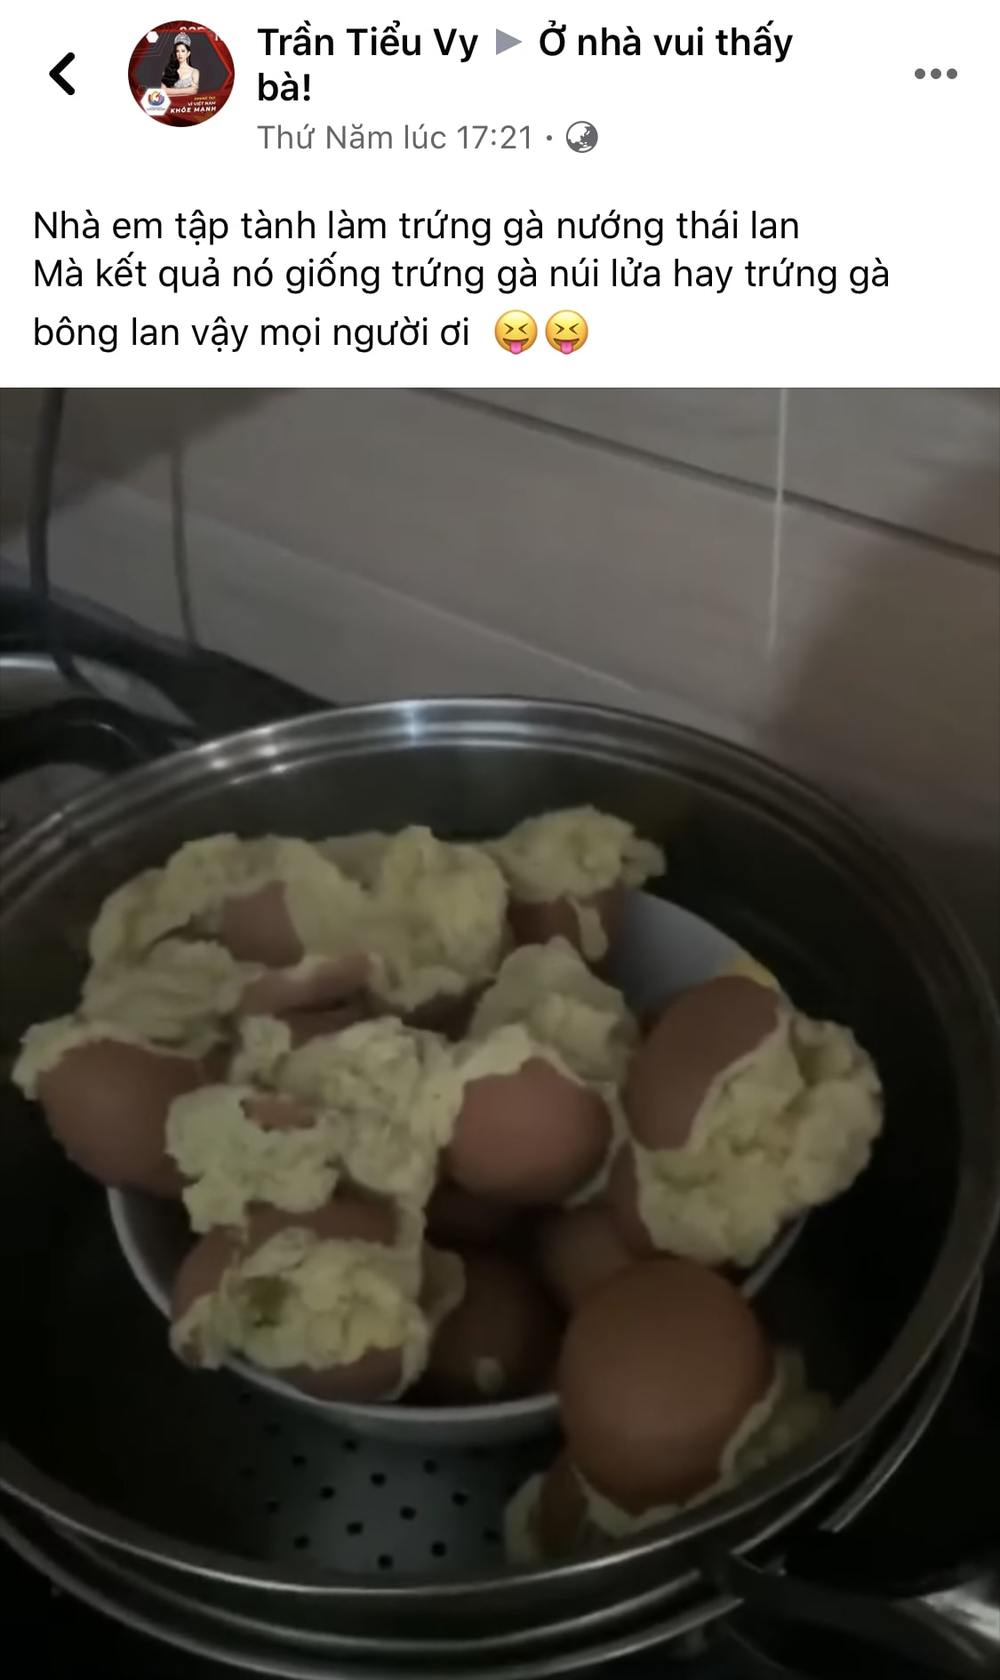  
Món trứng nướng thất bại vài ngày trước mà Tiểu Vy chia sẻ.